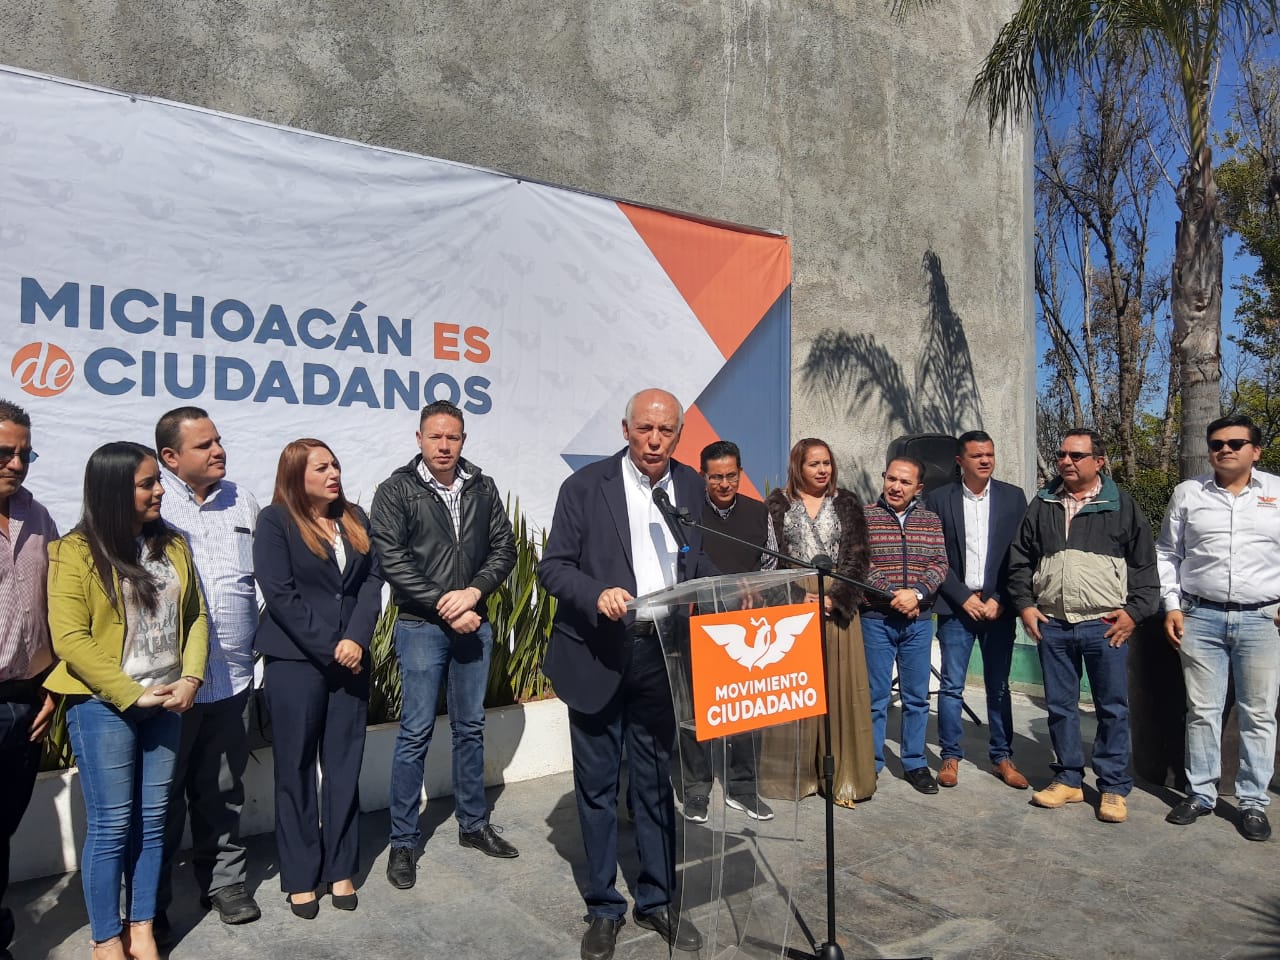 En junio, MC Michoacán tendrá lista agenda electoral para el 2021